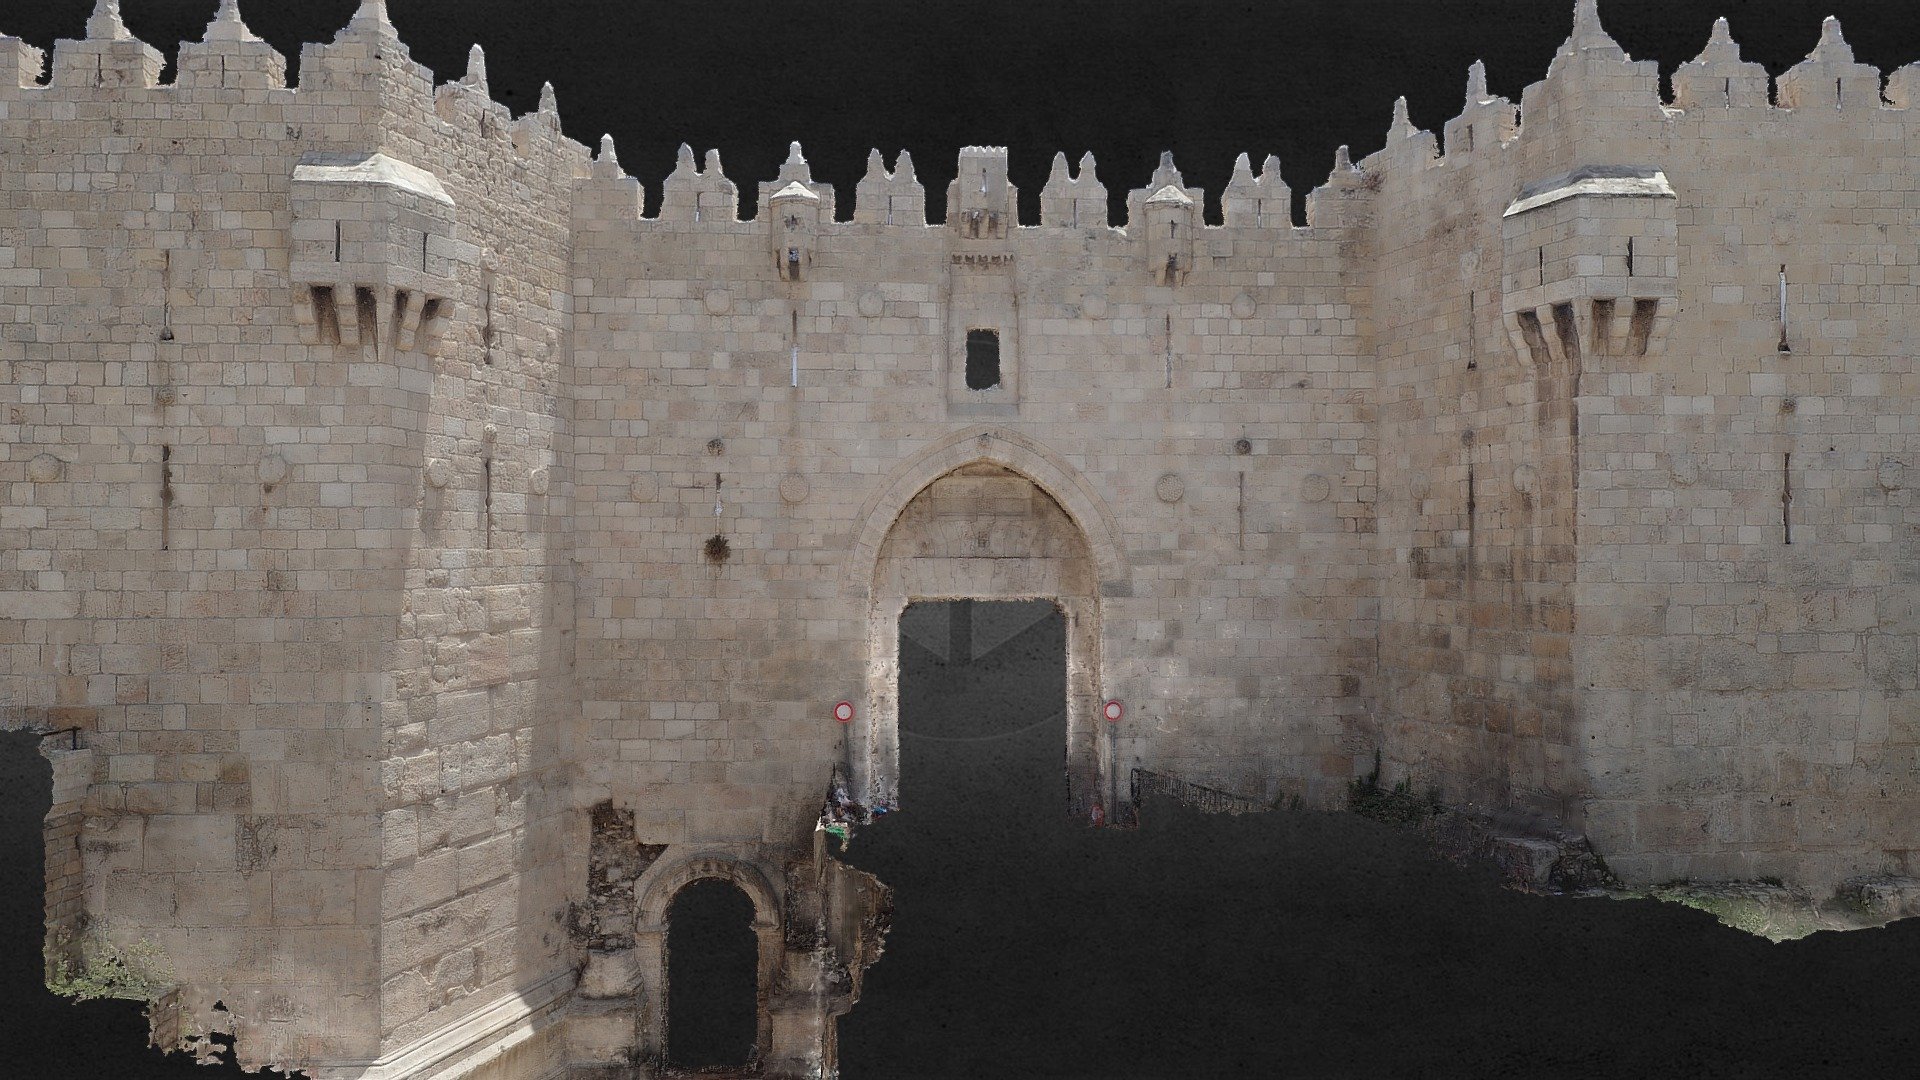 &ldquo;La porte de Damas (en hébreu : שער שכם, Sha'ar Shkhem ; en arabe : باب العامود, Bab al'Amoud) est un ancien passage dans les fortifications de la vieille ville de Jérusalem. Elle se situe entre les quartiers chrétien et musulman.

La porte de Damas porte en arabe le nom de « porte de la colonne » (Bab al'Amoud), car c'est là que se trouvait la colonne érigée par l'empereur romain Hadrien et qui figure sur la carte de Madaba. En hébreu, elle porte le nom de « porte de Shekhem », c'est-à-dire de « porte de Naplouse. » 